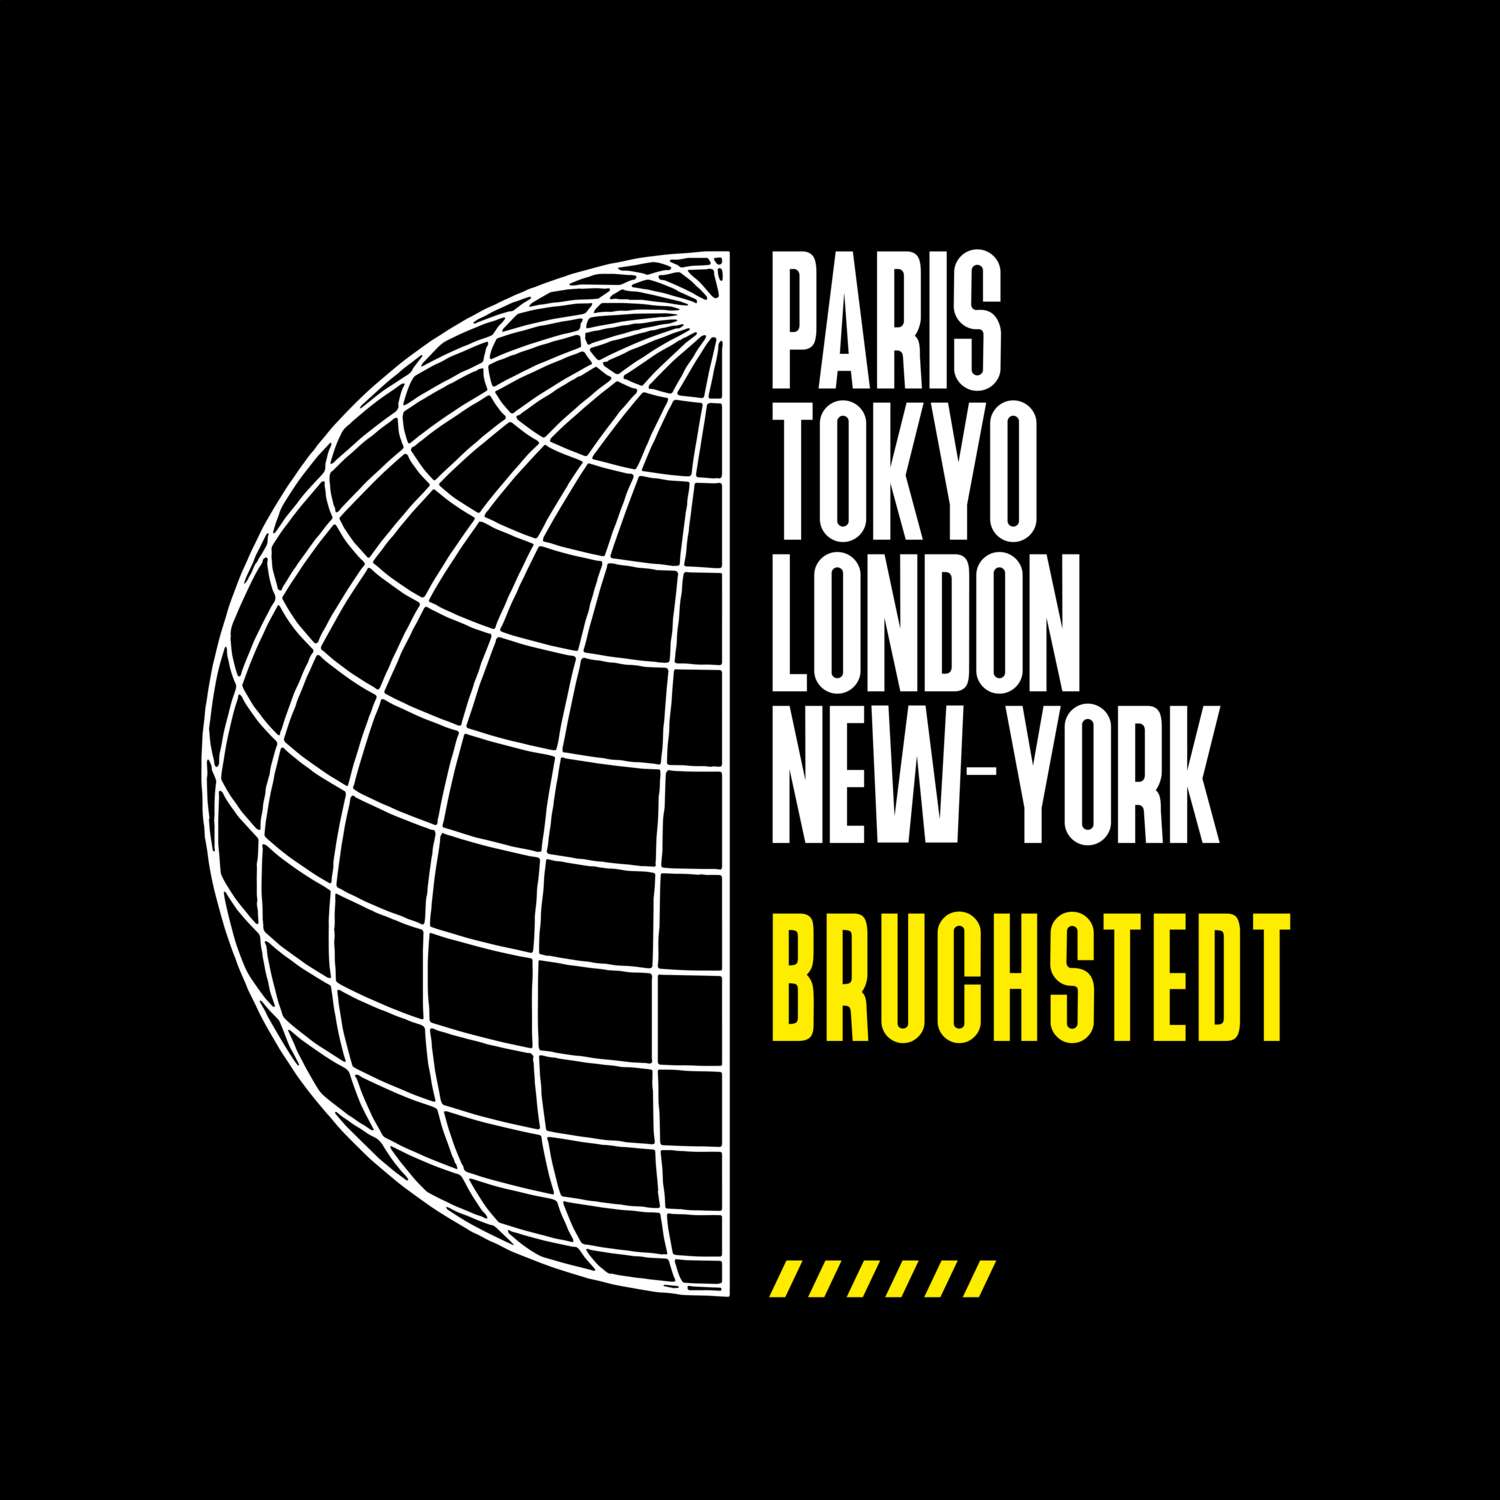 Bruchstedt T-Shirt »Paris Tokyo London«